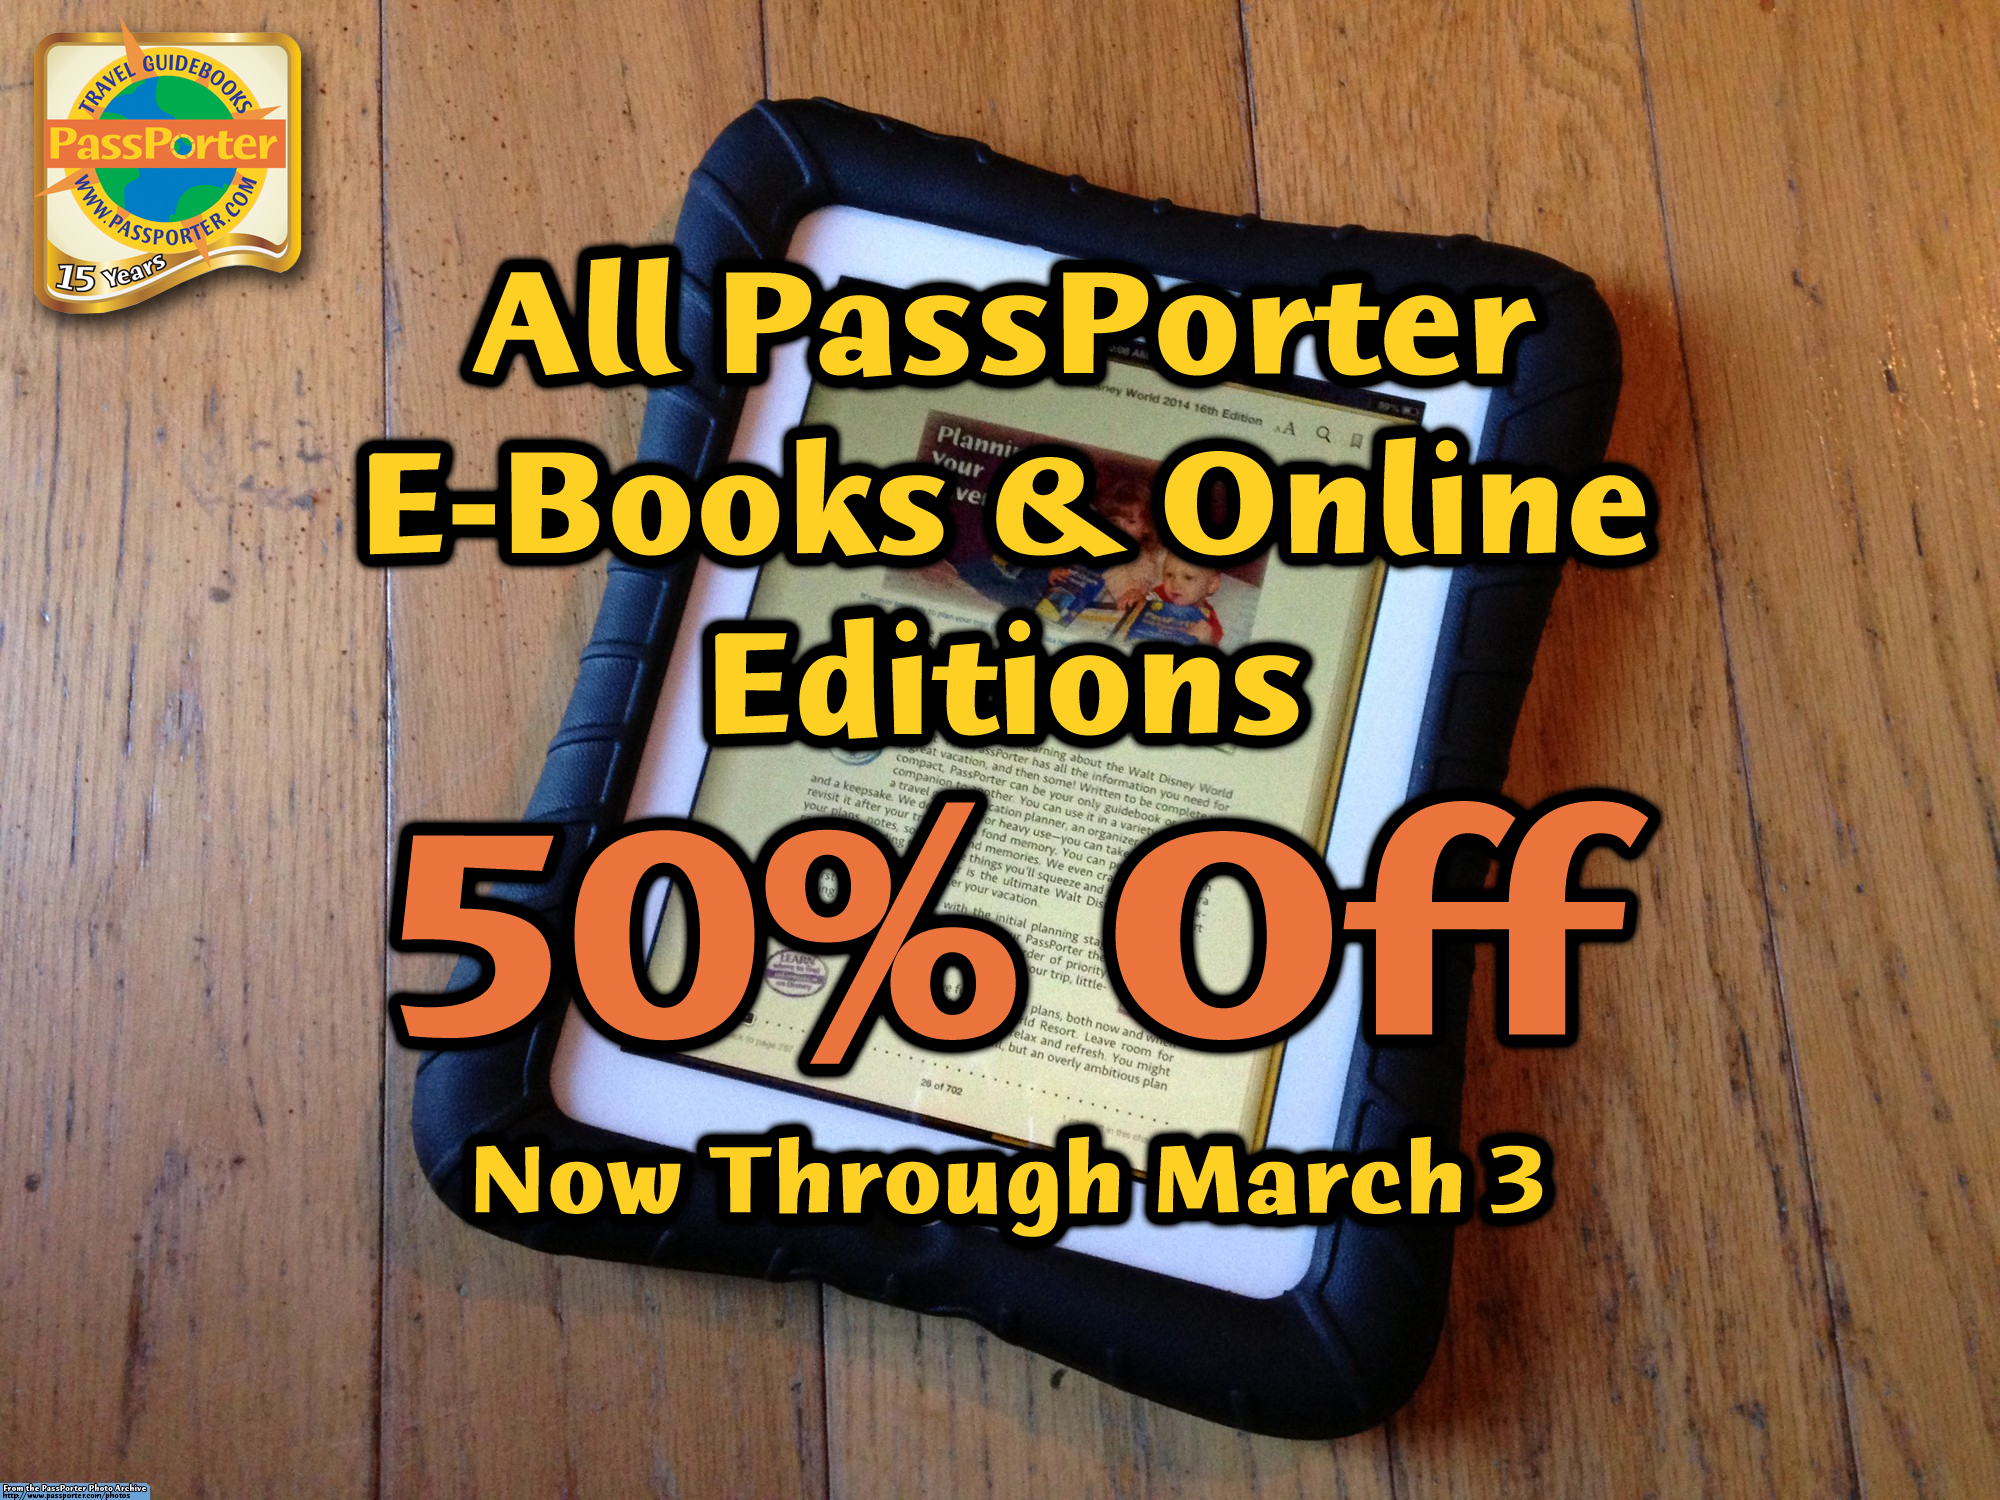 50% Off E-Books Until March 3